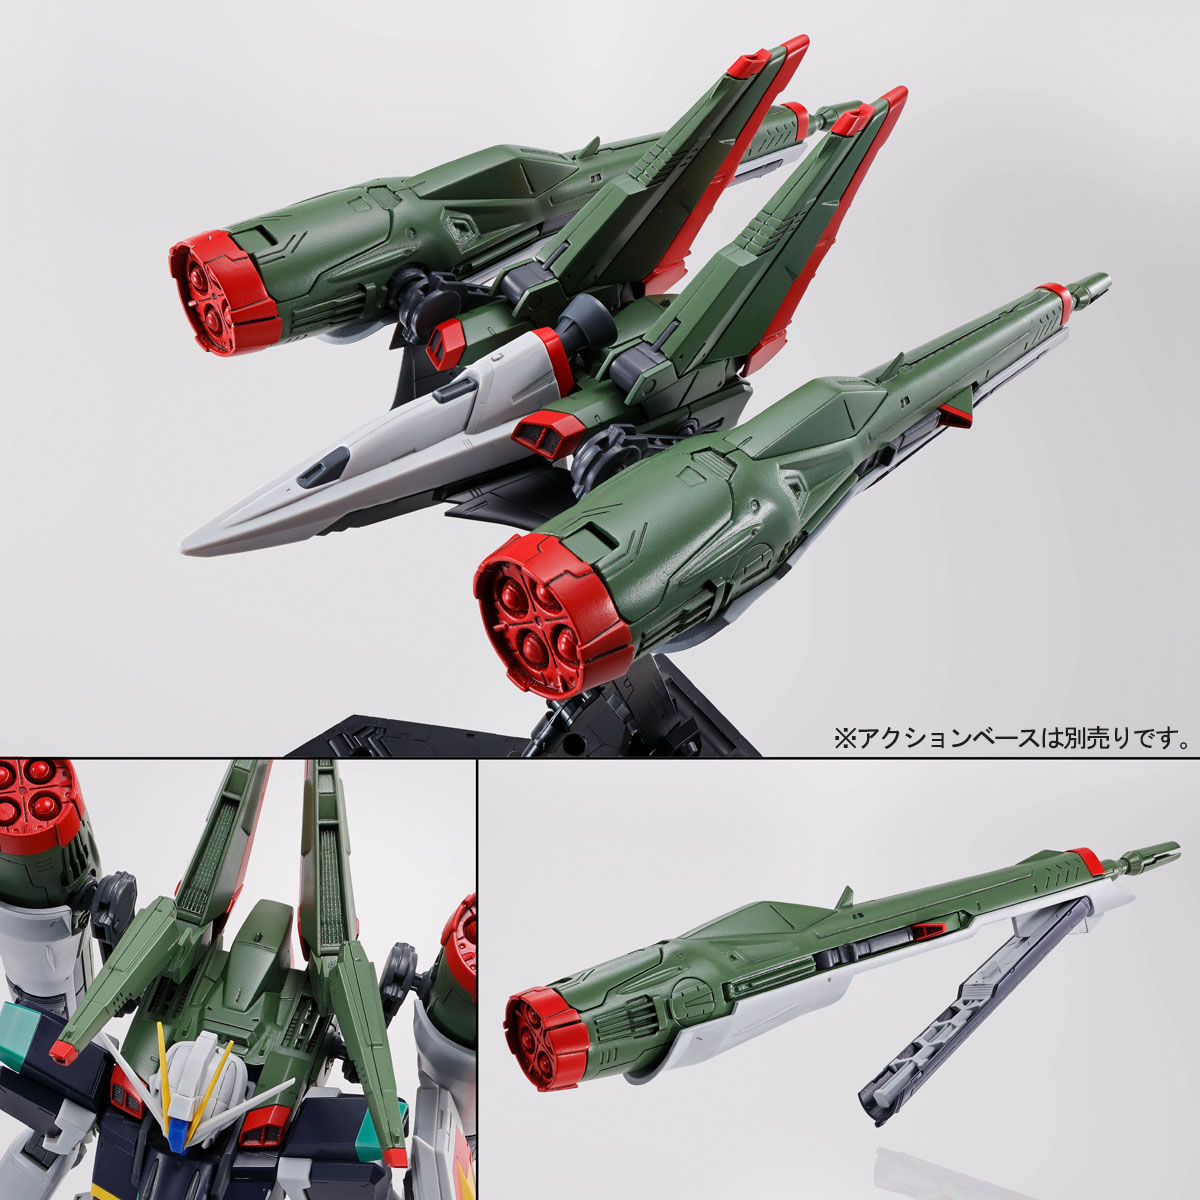 MG 1/100 ZGMF-X56S/γ Blast Impulse Gundam